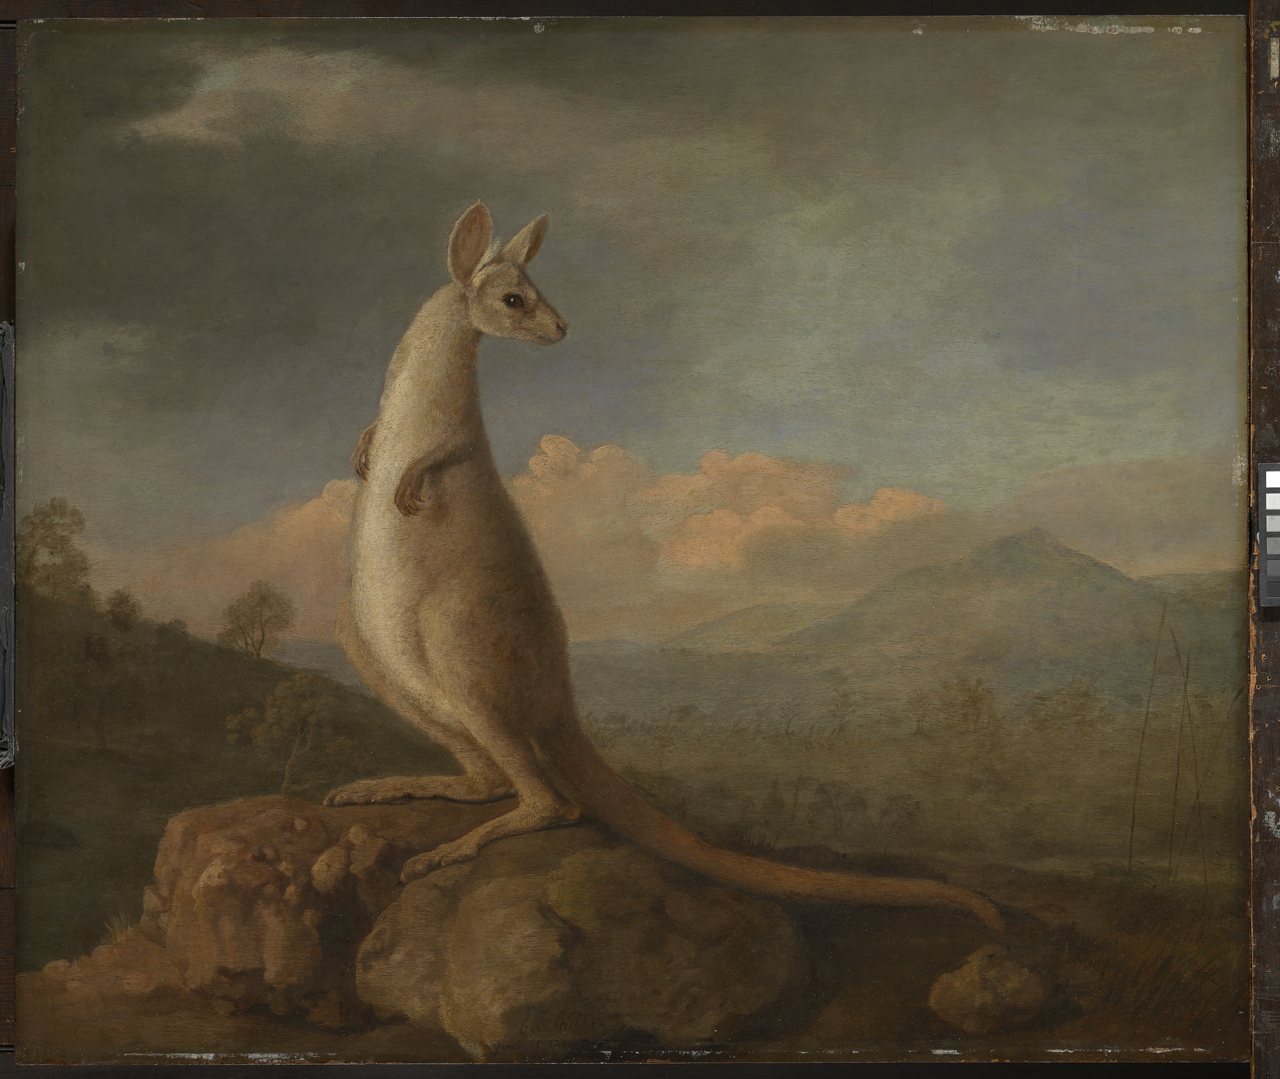 来自新荷兰的袋鼠 by 乔治 斯塔布斯 - 1772 - 605 x 715 毫米 